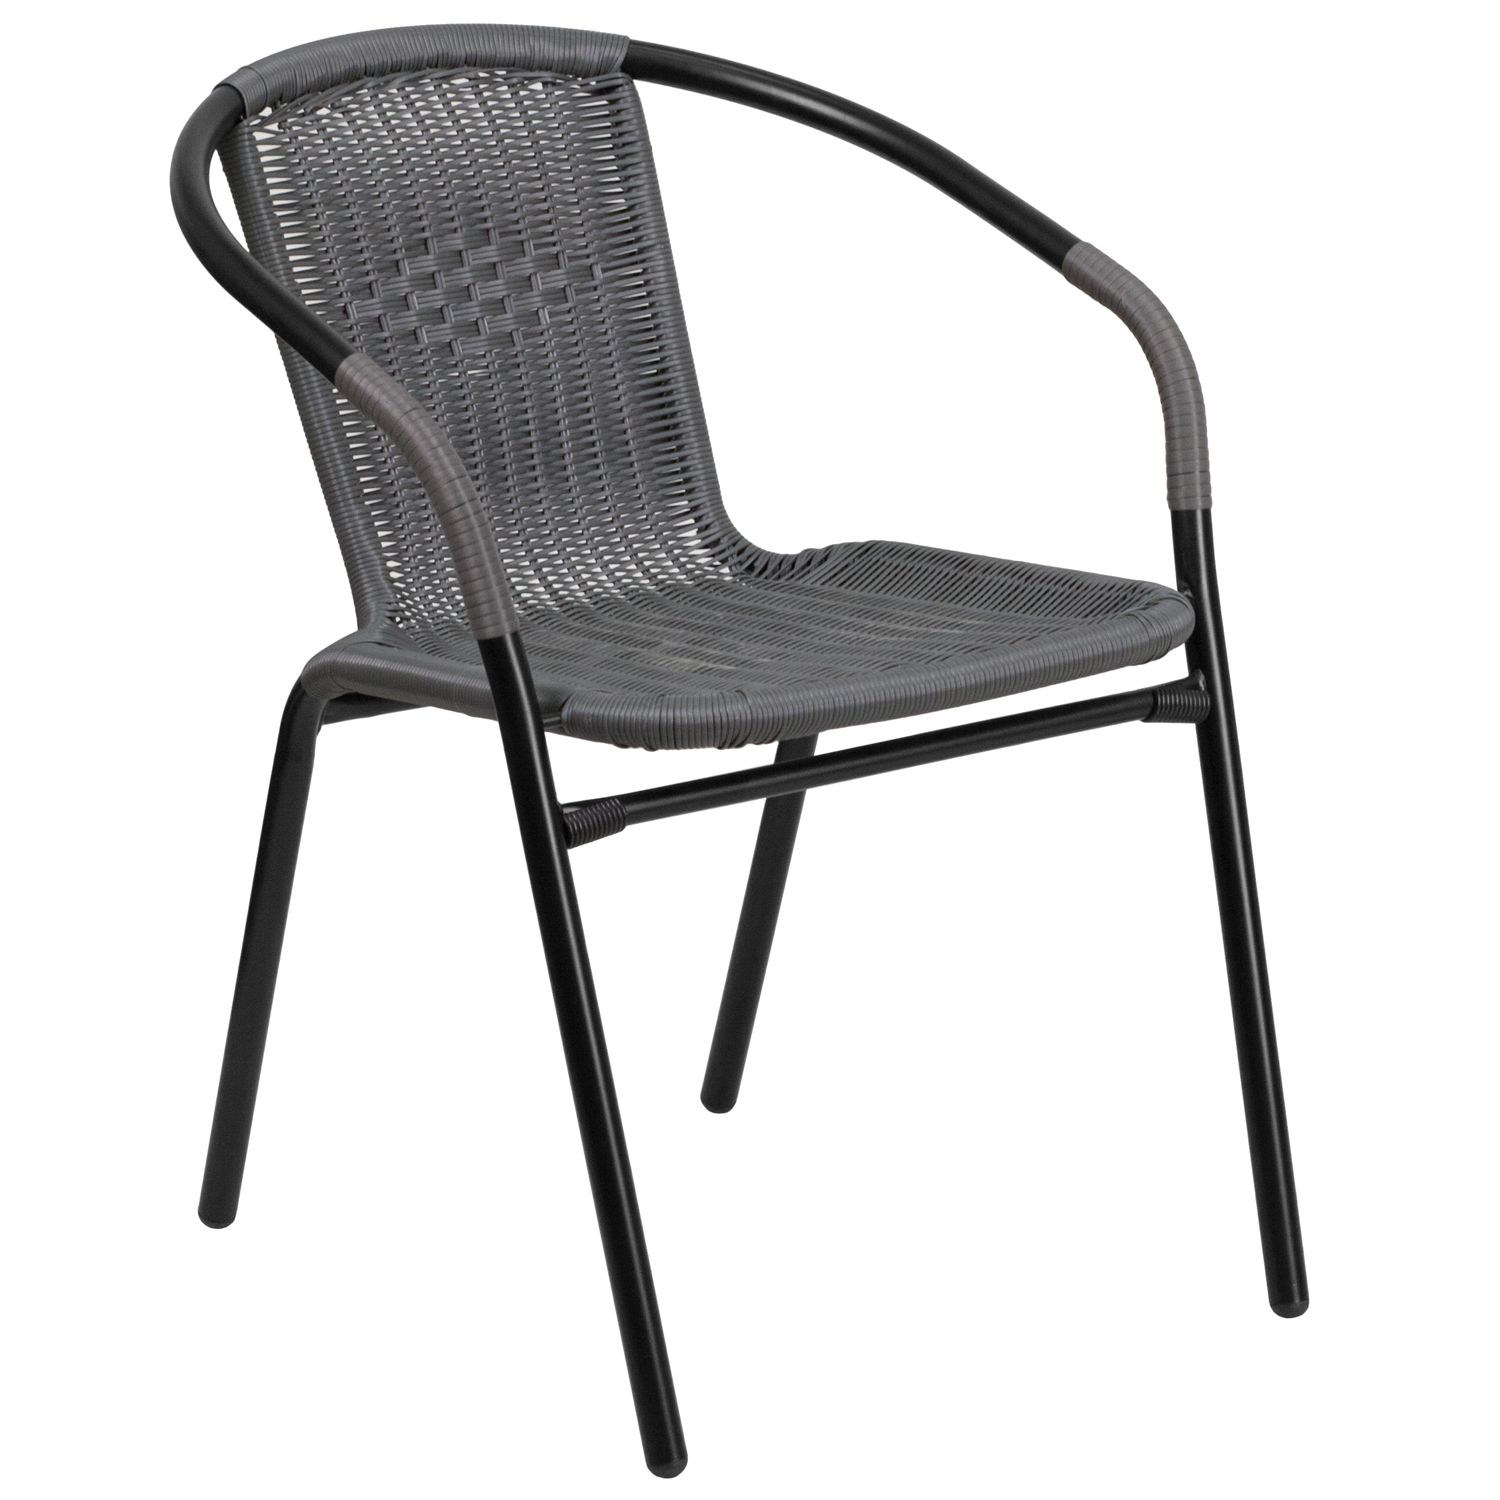 Steel Indoor & Outdoor Rattan Chair - Grey